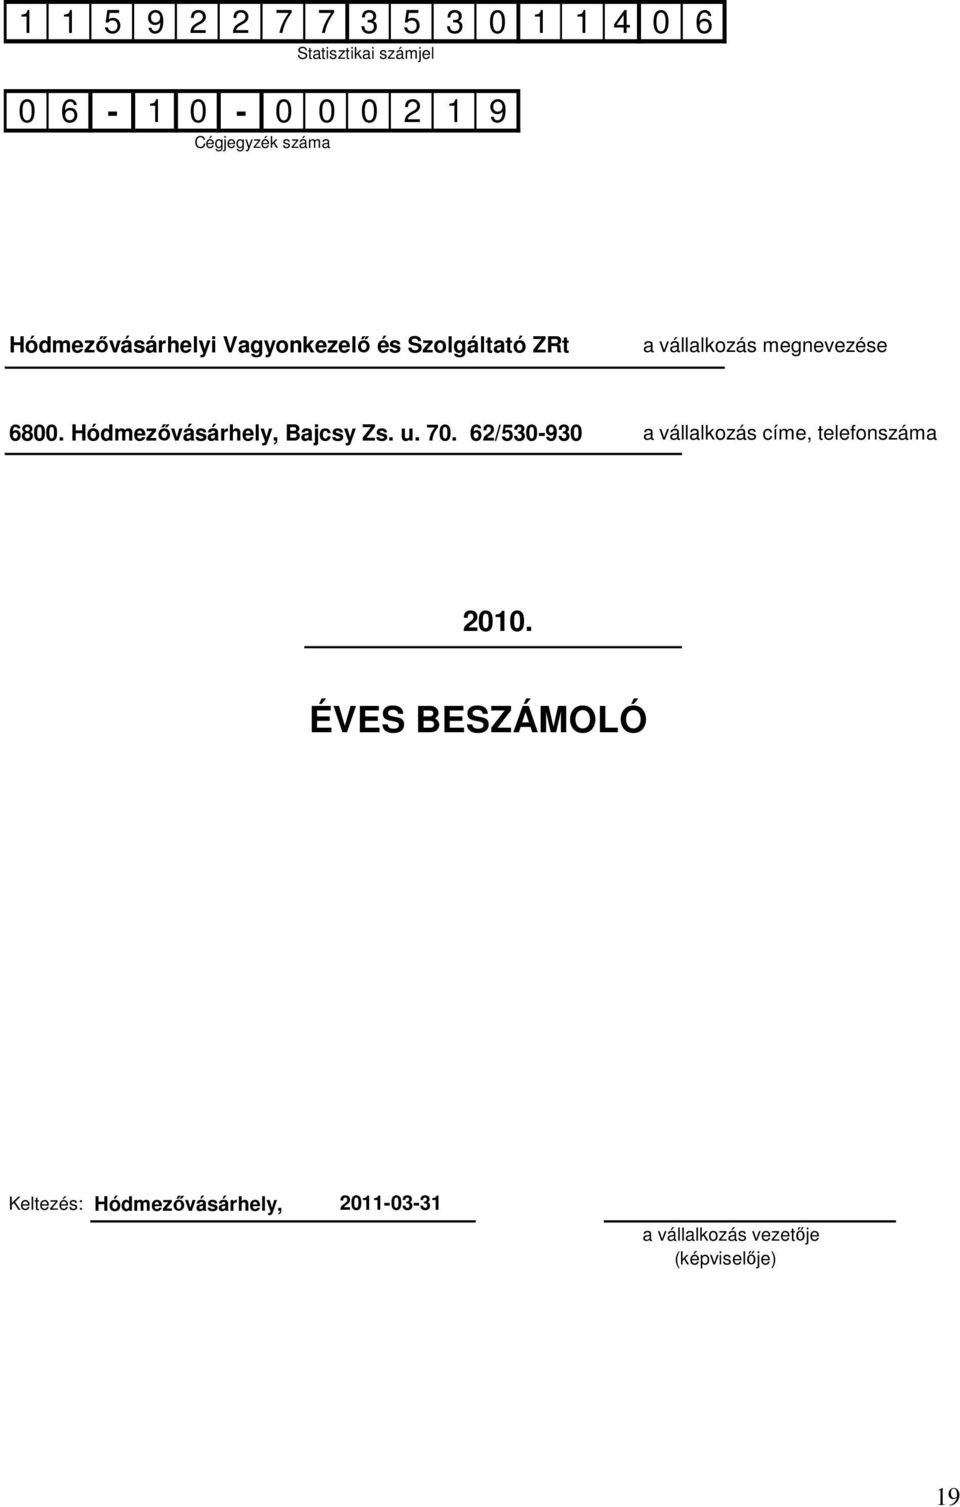 Hódmezıvásárhely, Bajcsy Zs. u. 70. 62/530-930 a vállalkozás címe, telefonszáma 2010.